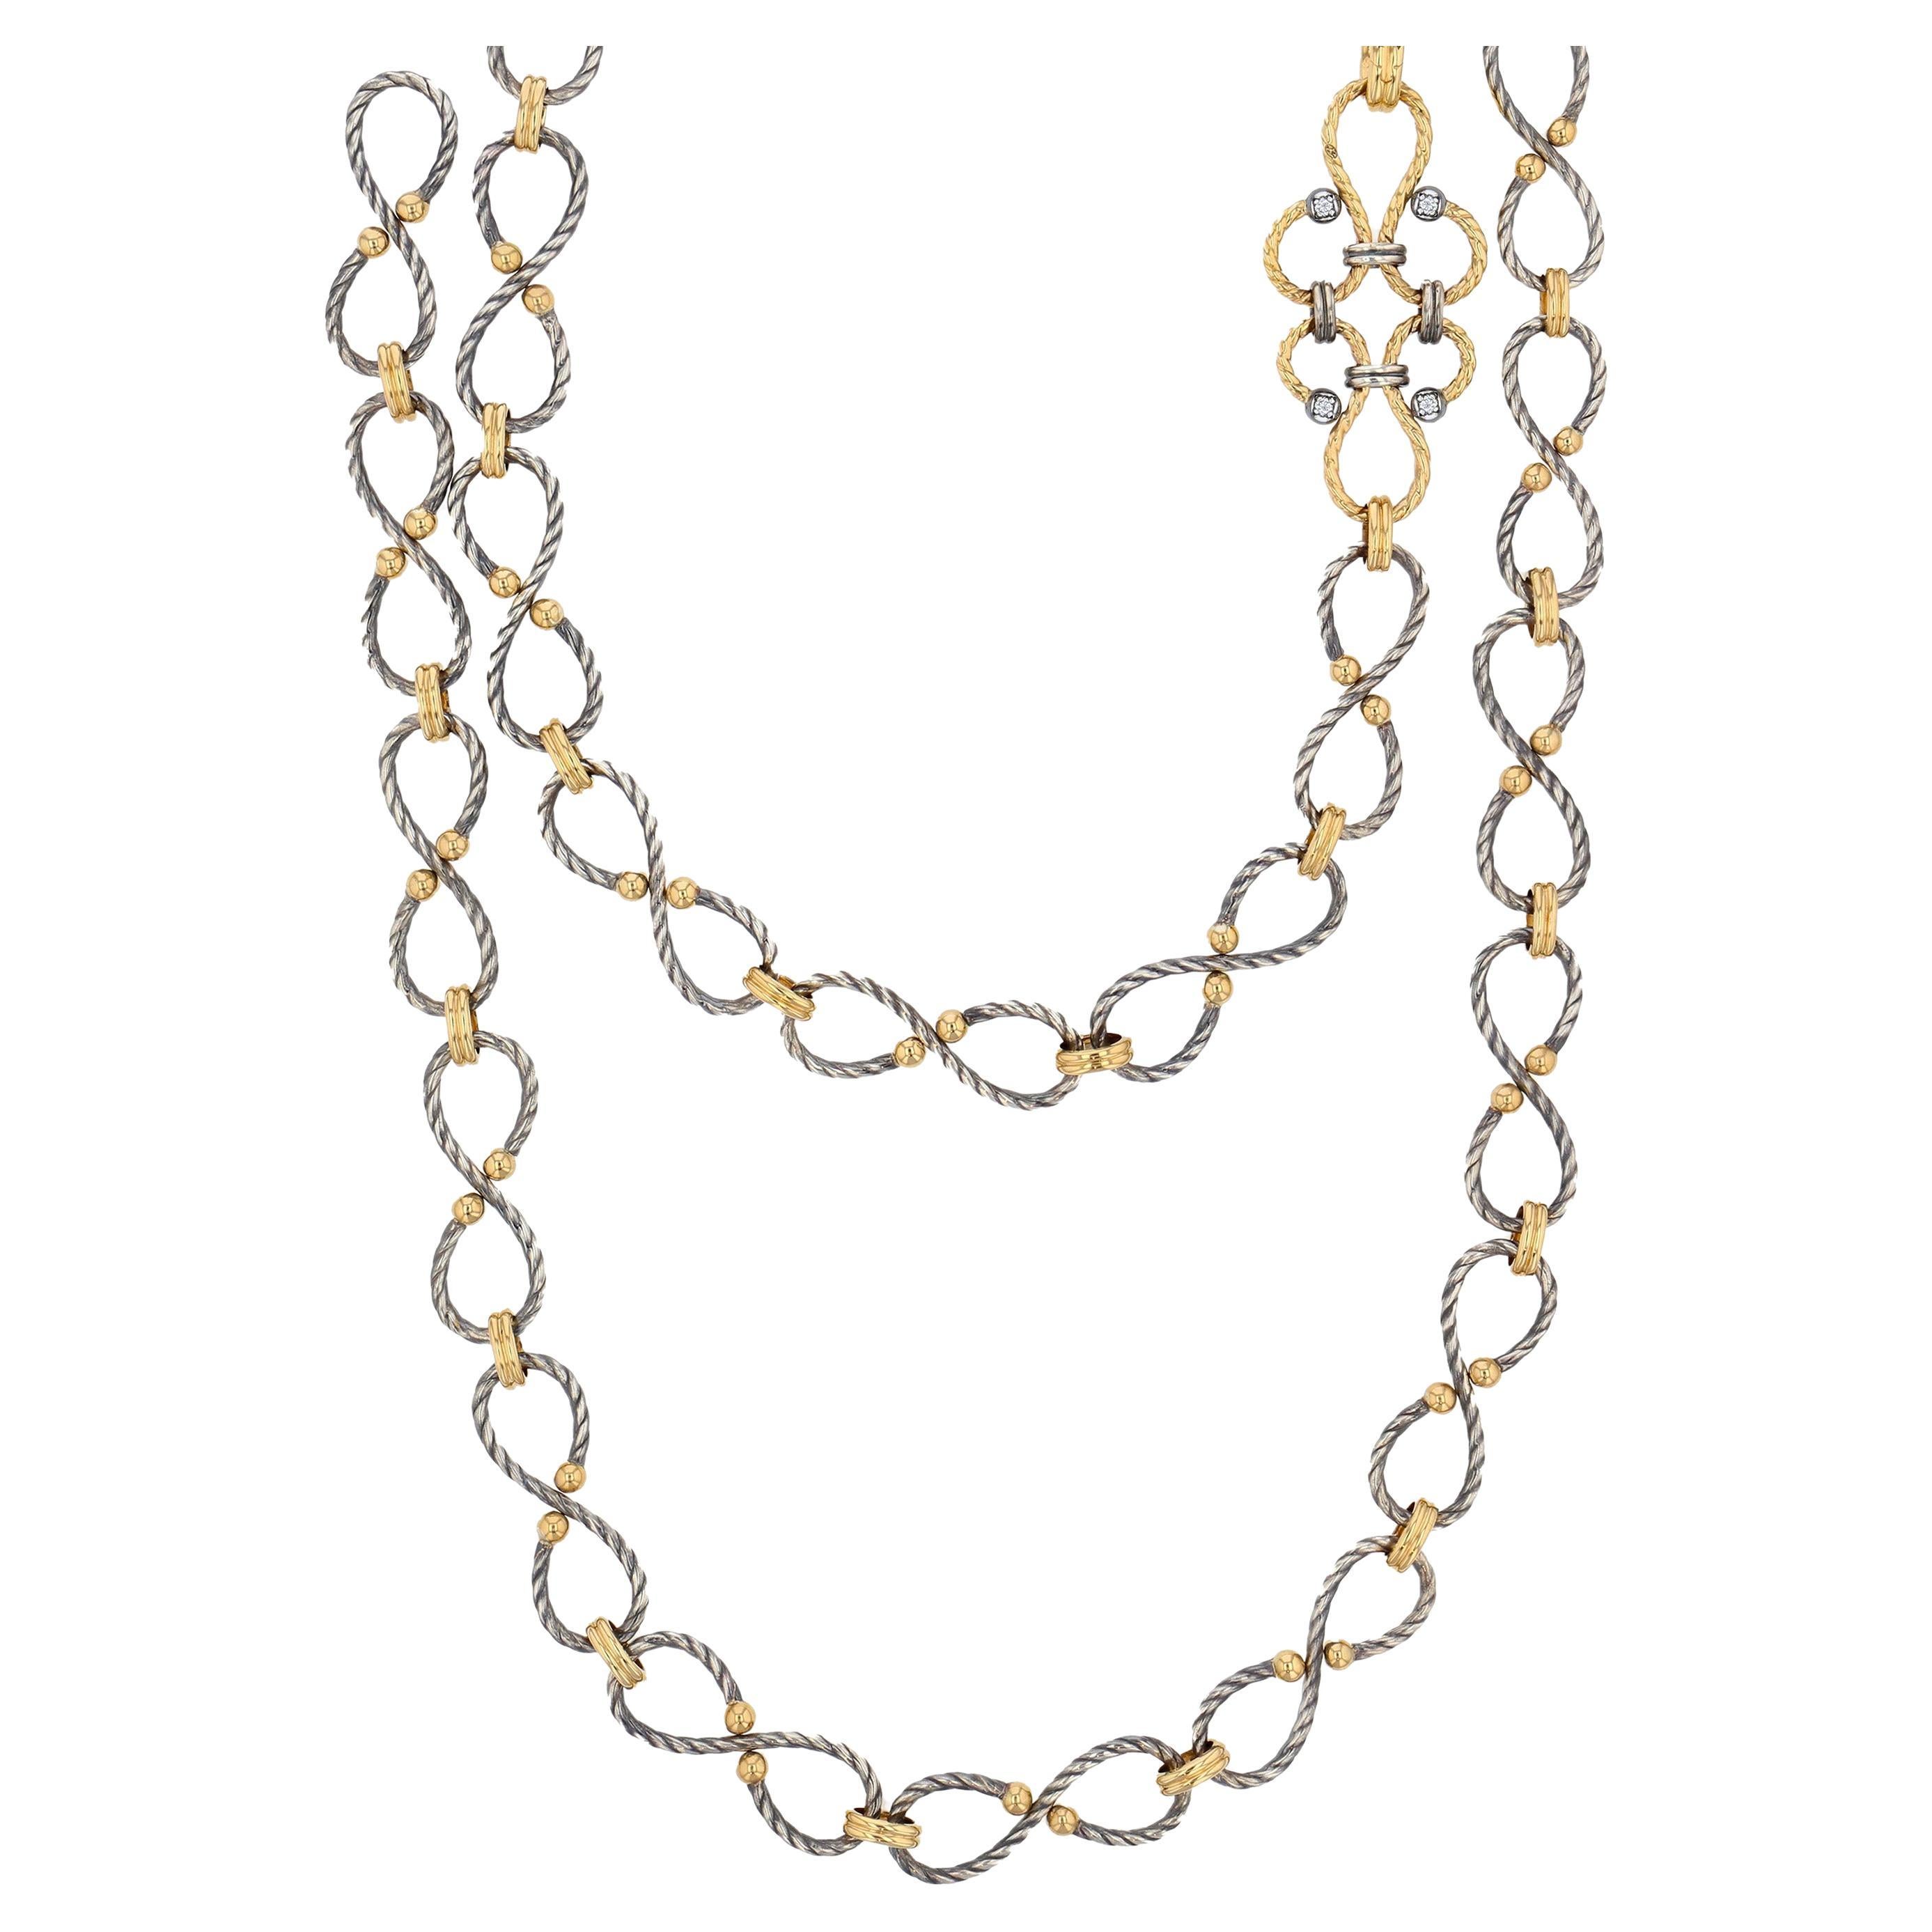 Elie Top Chain Necklaces